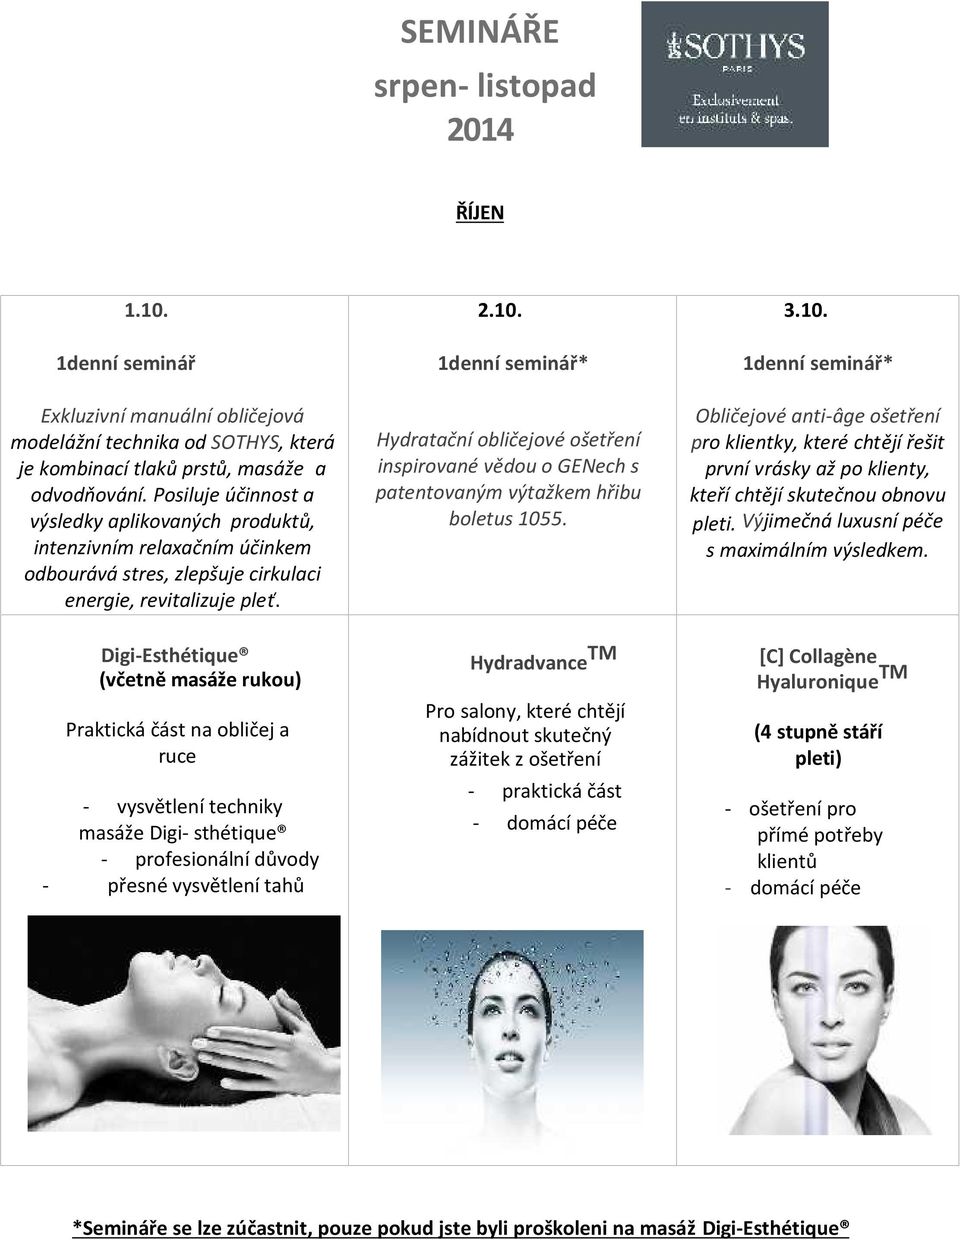 Digi-Esthétique (včetně masáže rukou) Praktická část na obličej a ruce - vysvětlení techniky masáže Digi- sthétique - profesionální důvody - přesné vysvětlení tahů 2.10.